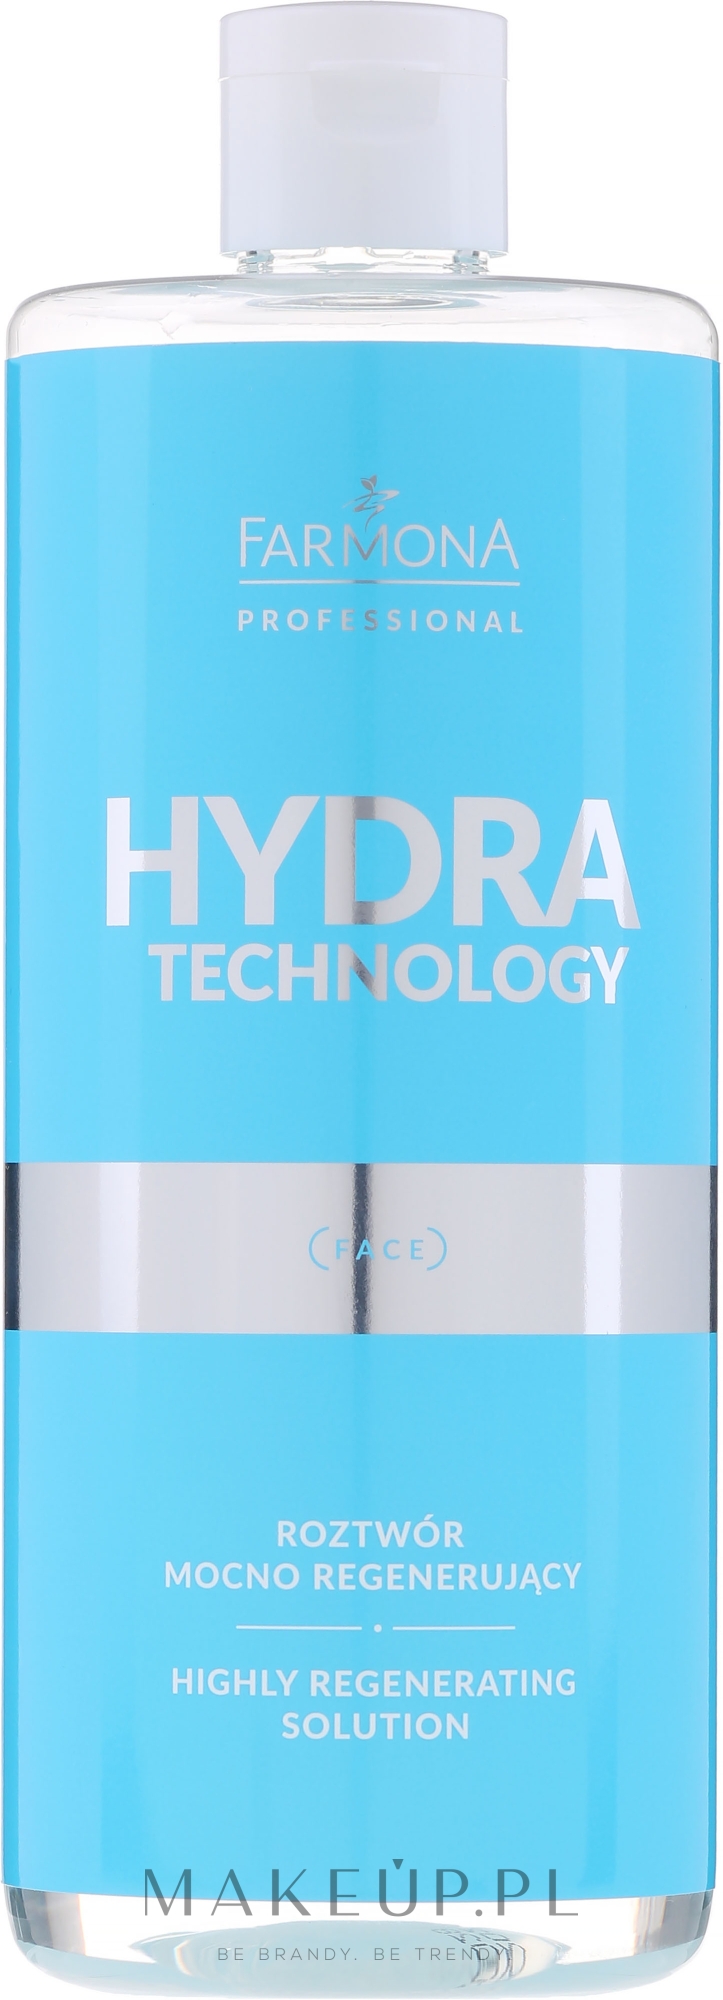 Roztwór mocno regenerujący do zabiegów kosmetologicznych - Farmona Professional Hydra Technology Highly Regenerating Solution  — Zdjęcie 500 ml